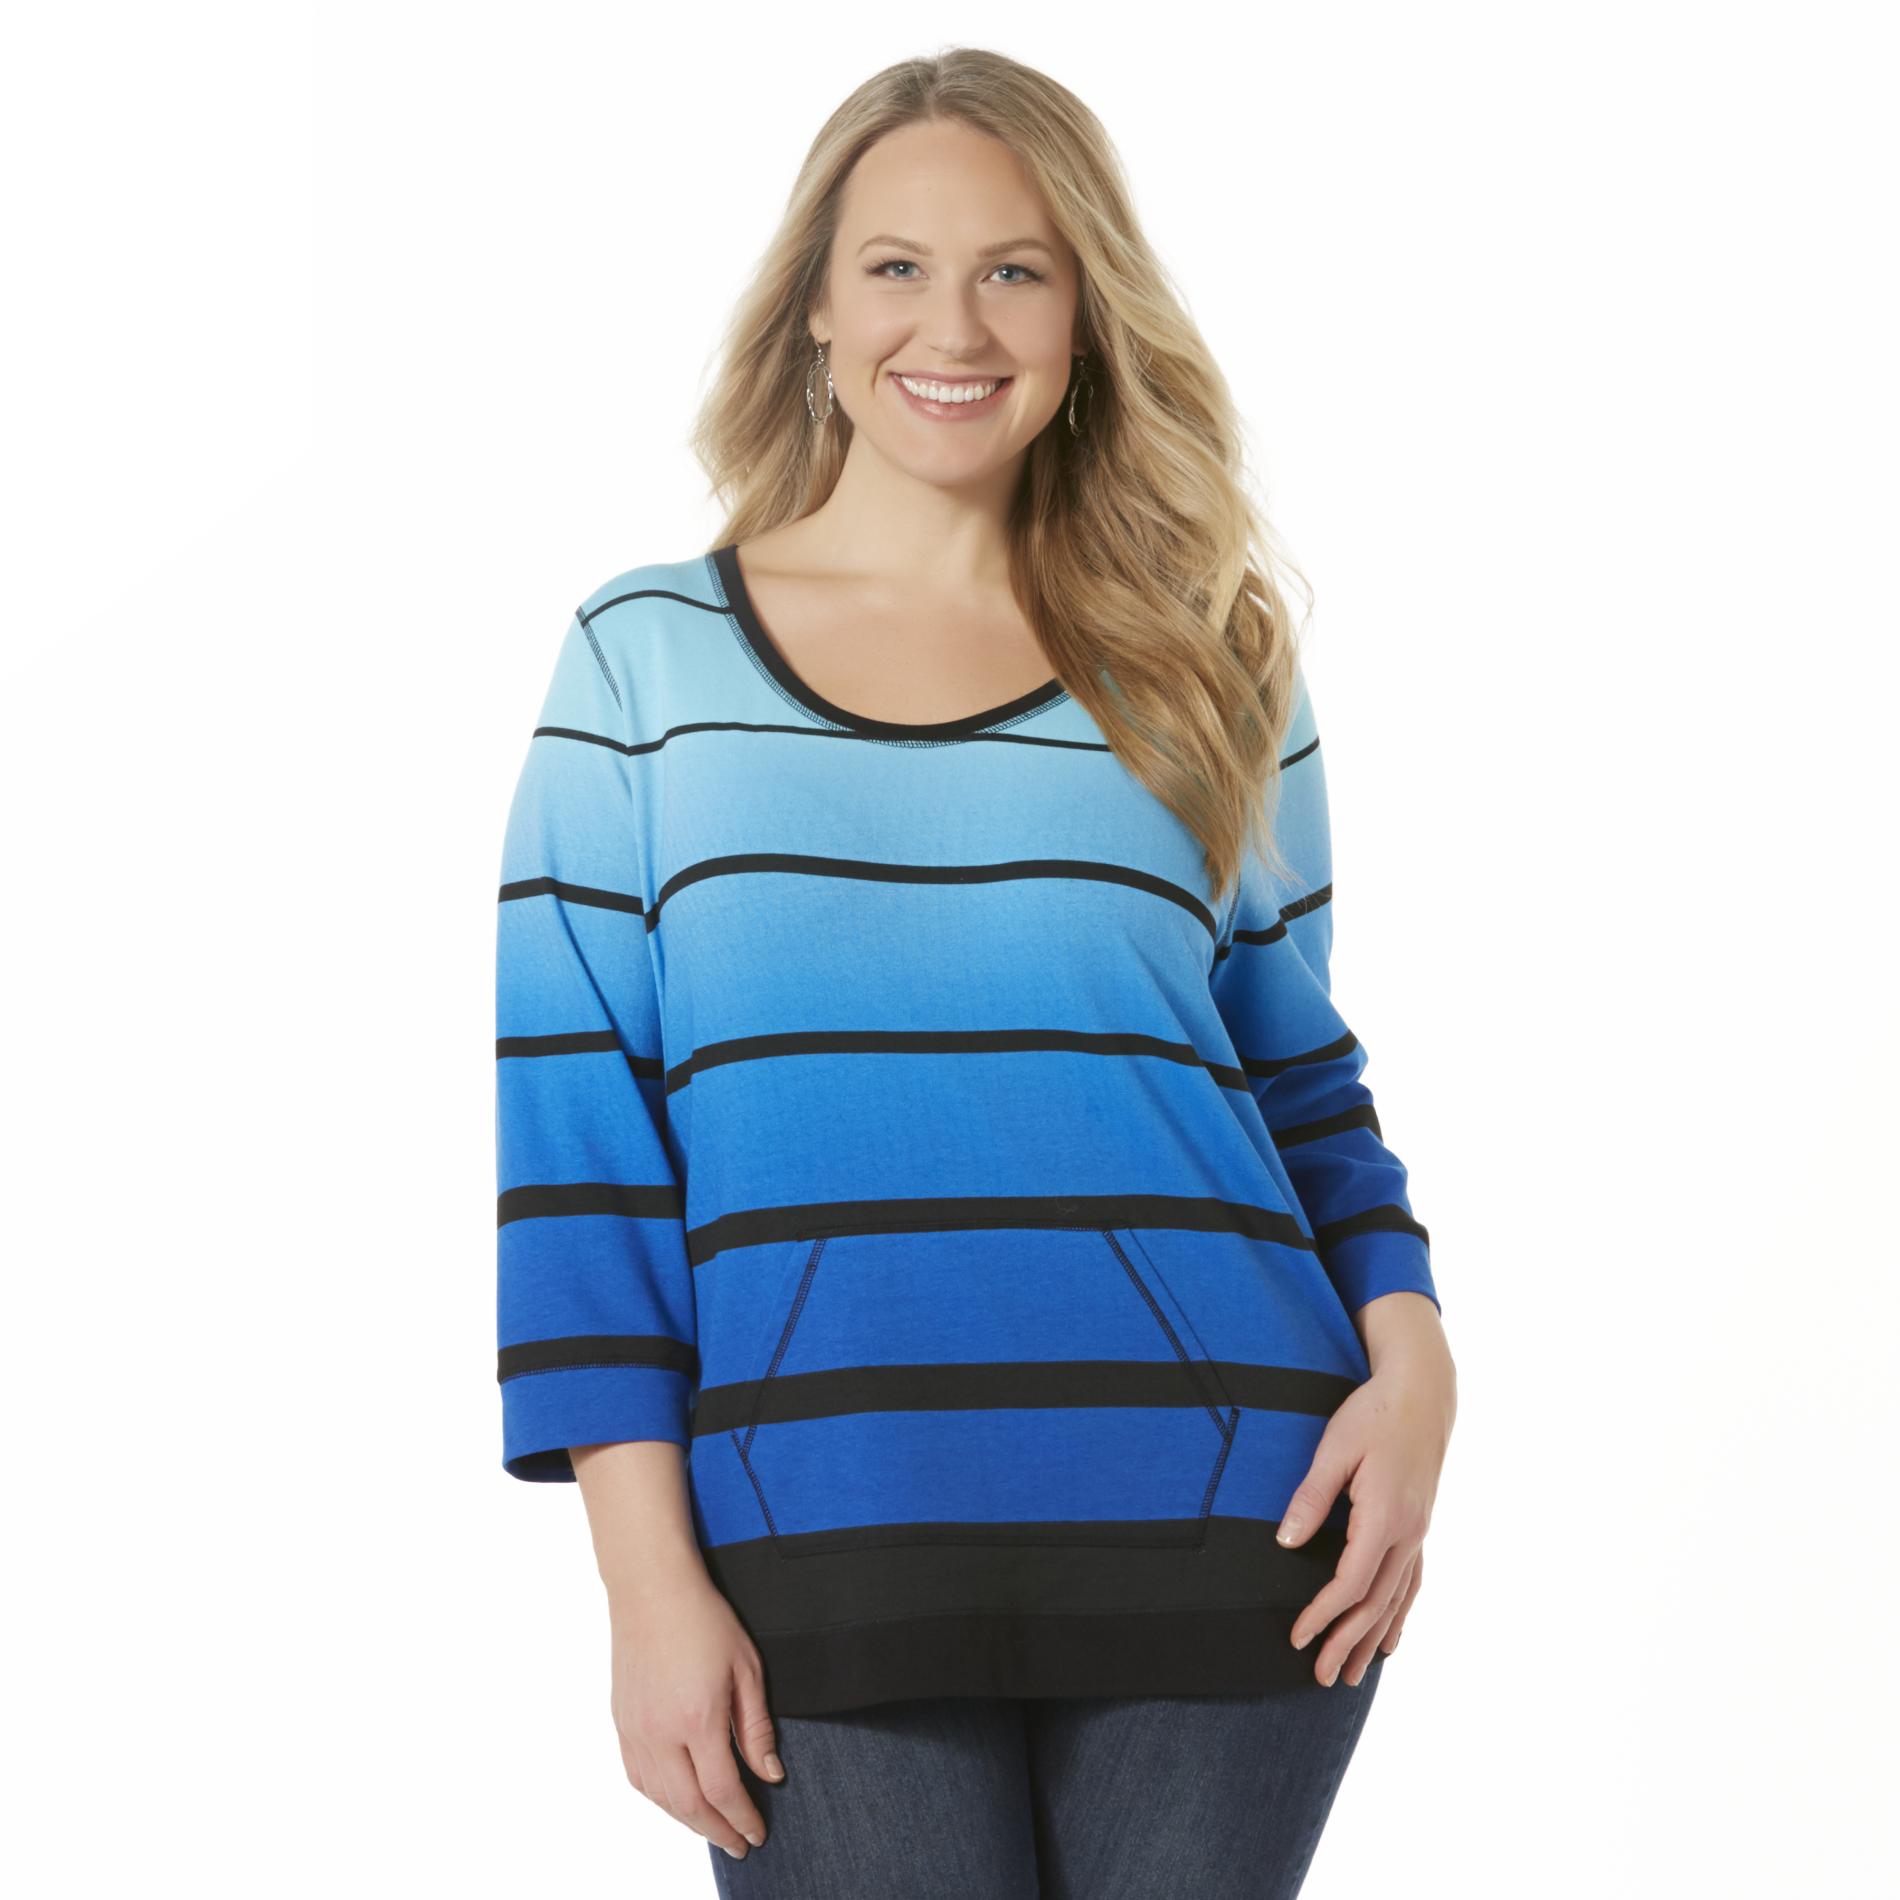 Simply Emma Women's Plus Sweatshirt Top - Ombre Striped